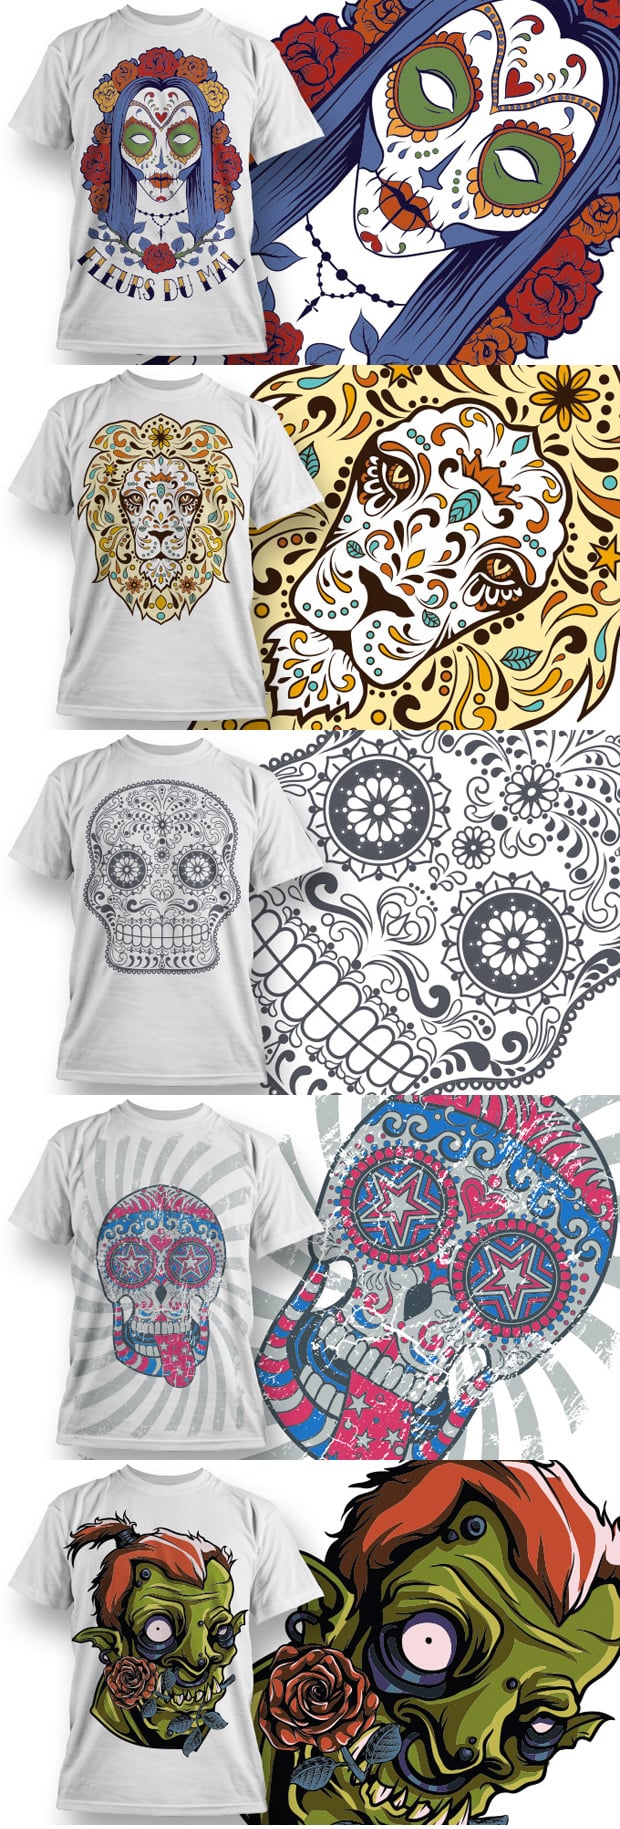 T-shirt Designs Bundle: 50 Awesome T-shirt Vectors